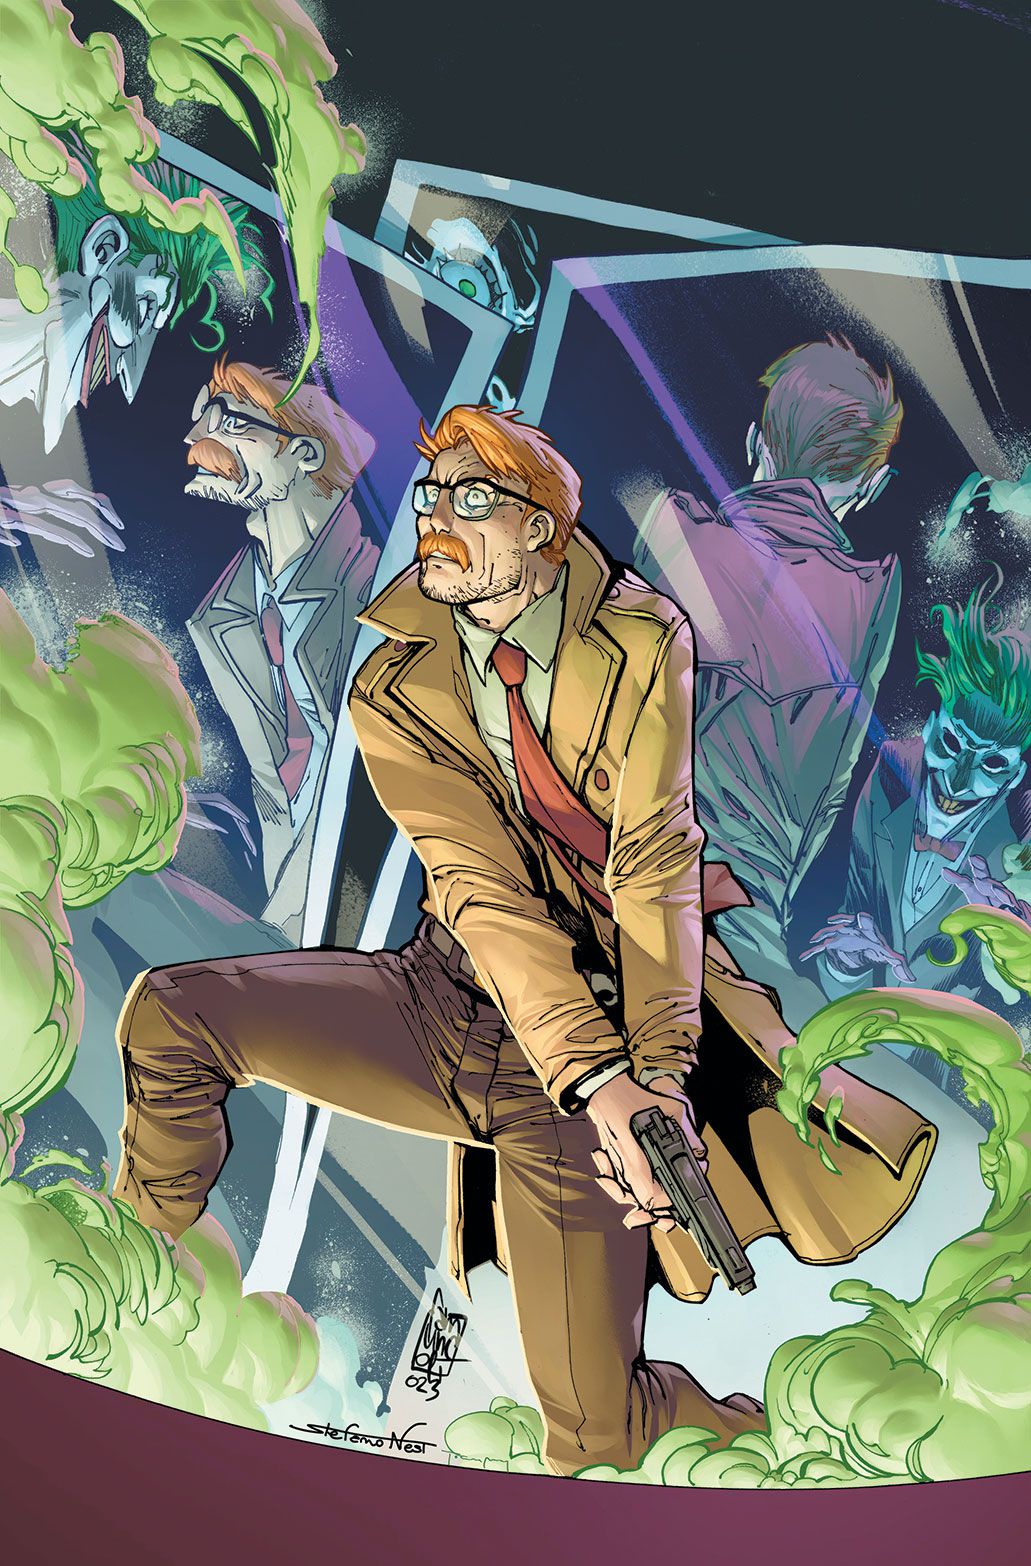 Jim Gordon affronte le Joker dans une maison de miroirs – certains miroirs reflètent deux Jokers au lieu de Jim et du Joker.  Gordon tient un pistolet à deux mains. 